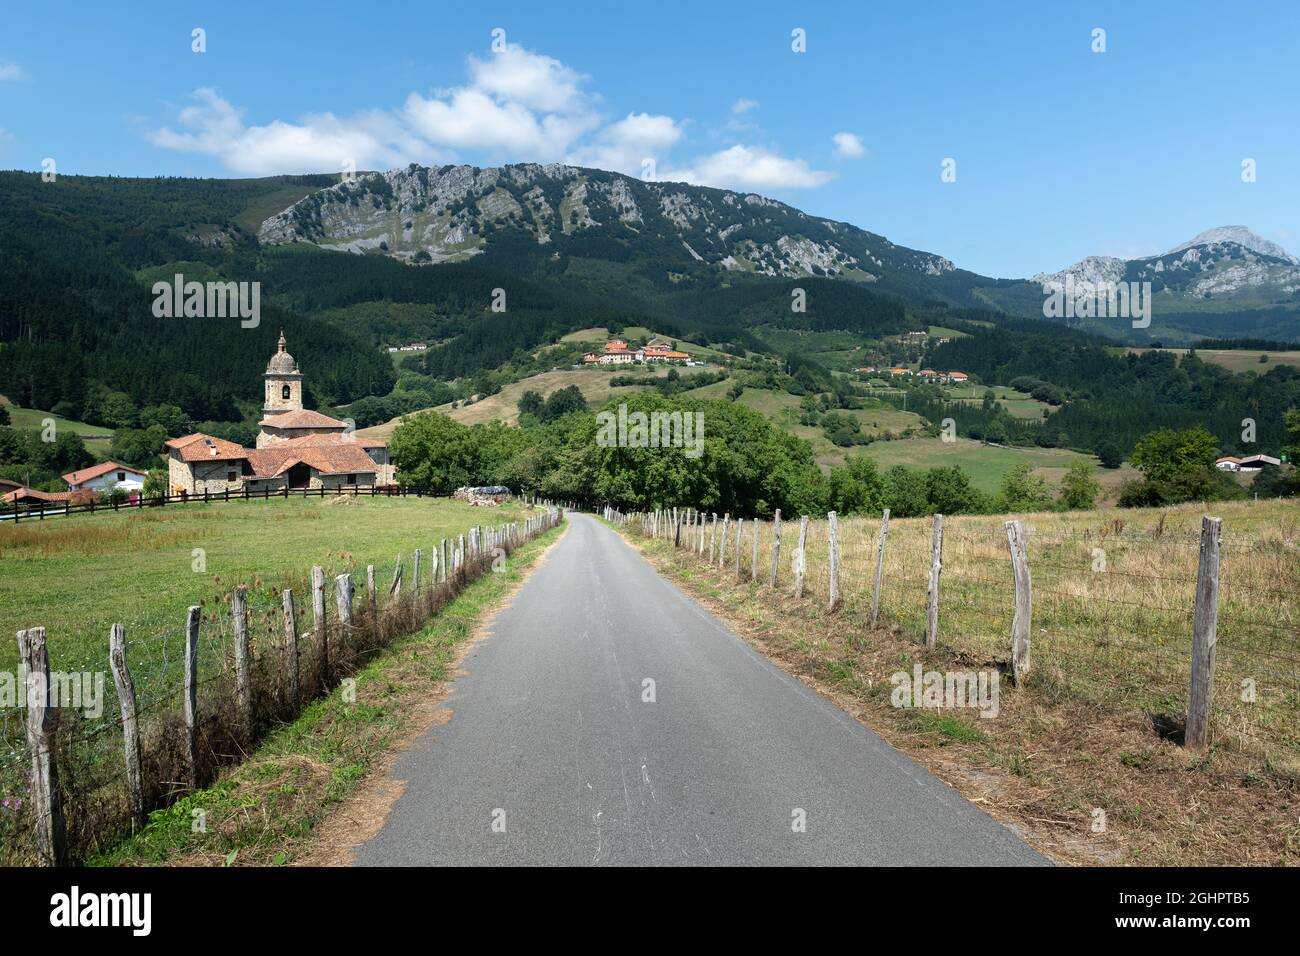 Strada per il quartiere di Uribarri nella valle di Aramaio, Paesi Baschi in Spagna Foto Stock